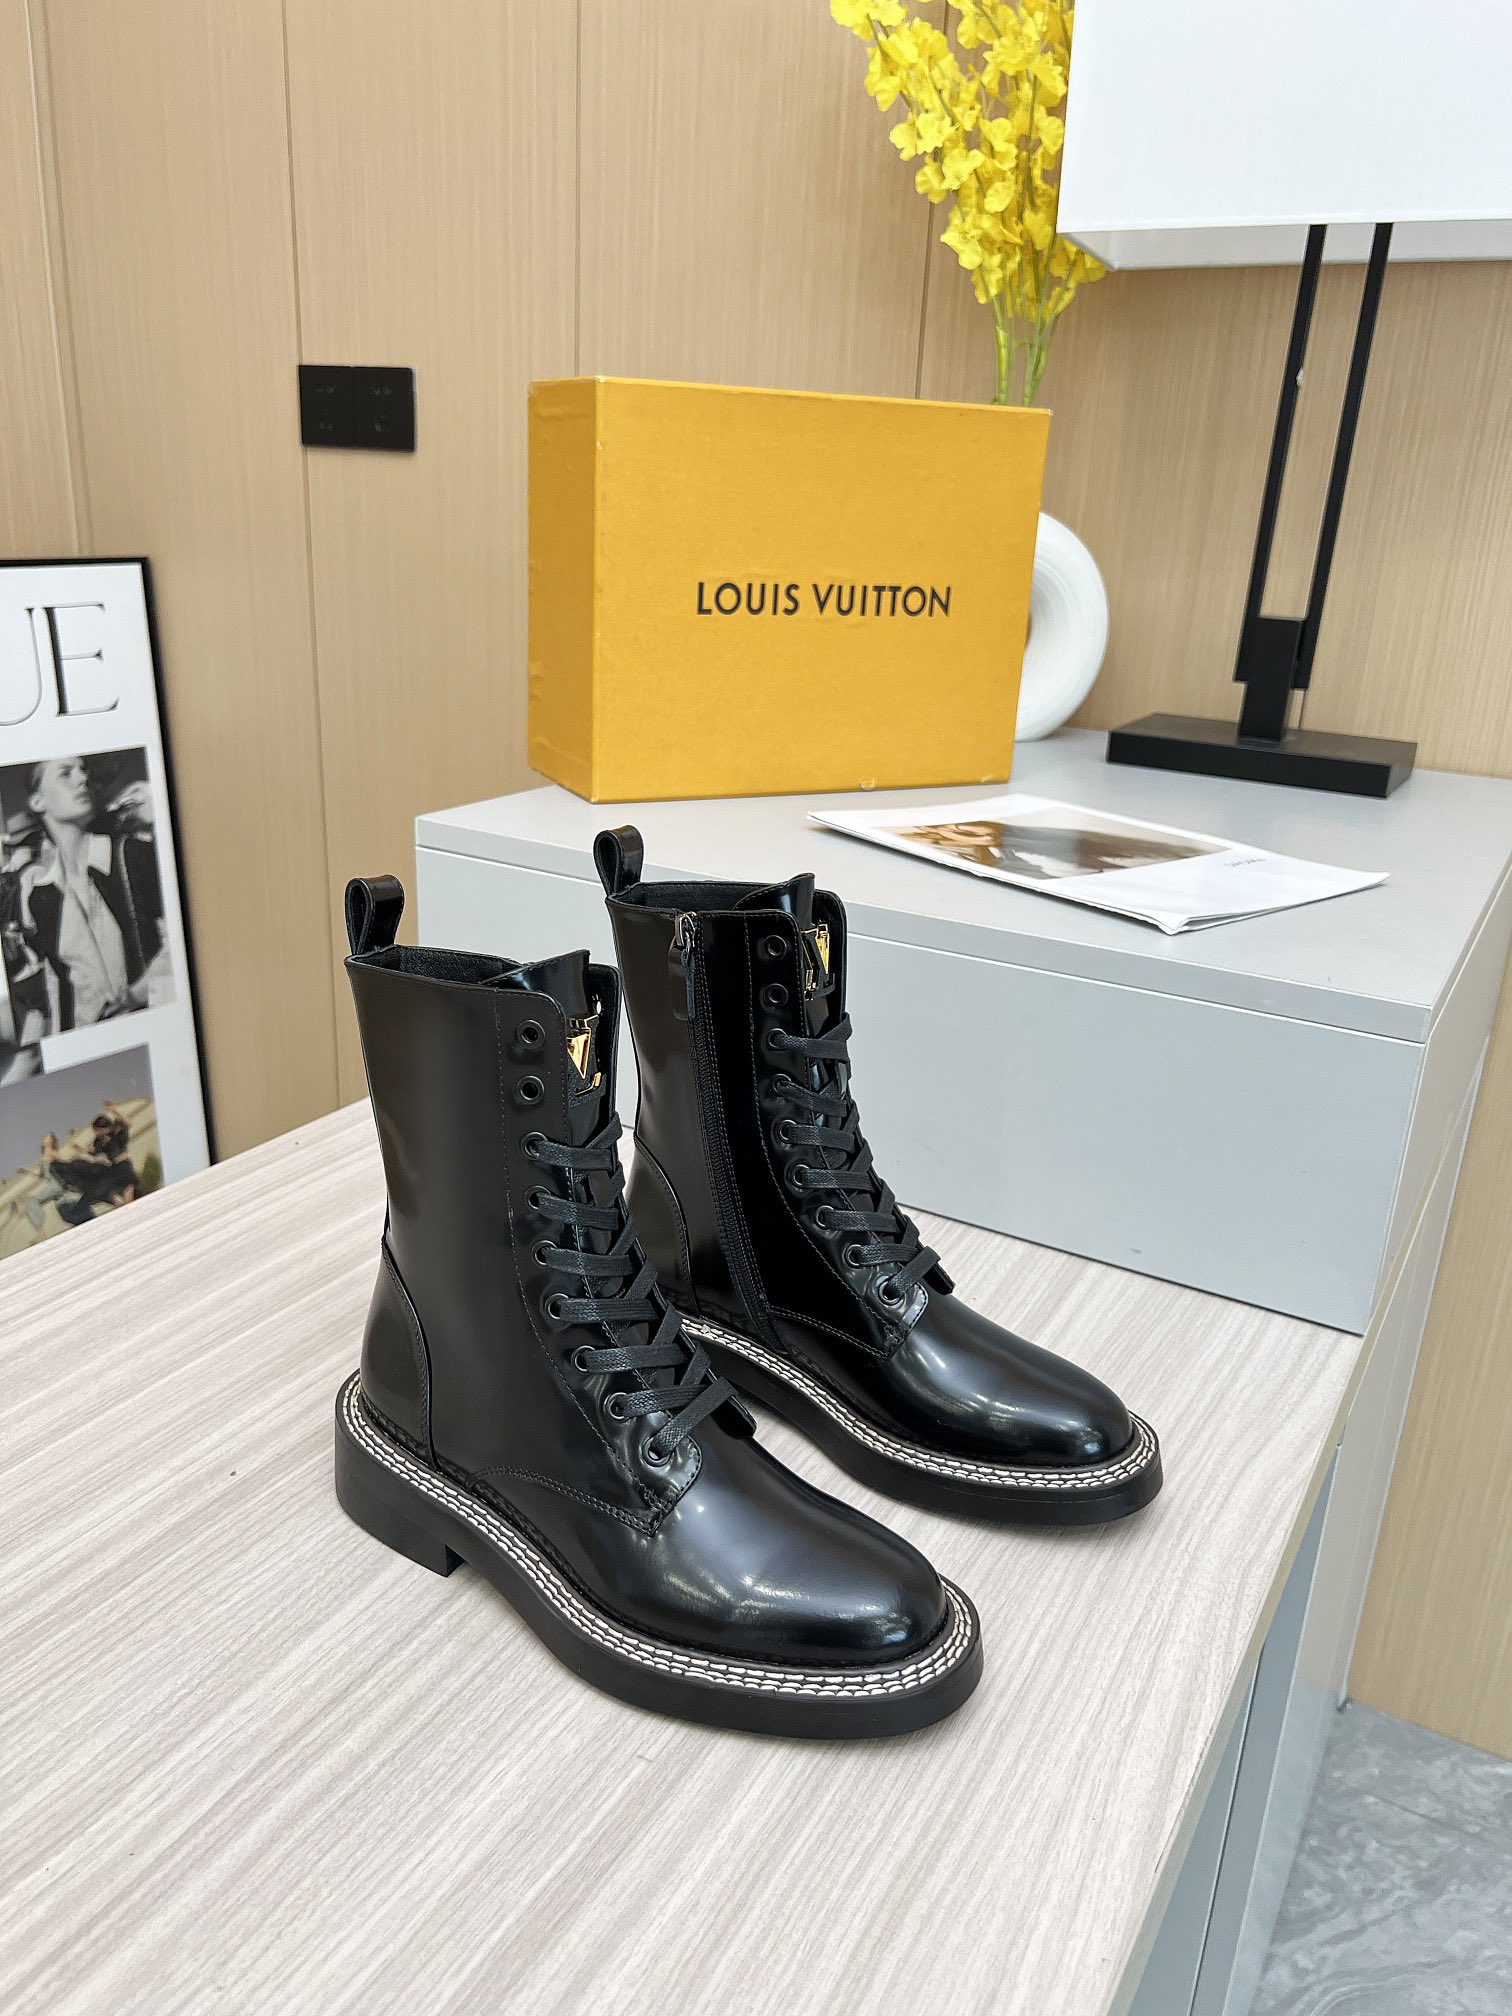 Louis Vuitton Martin Boots Short Boots Women Calfskin Cowhide Sheepskin